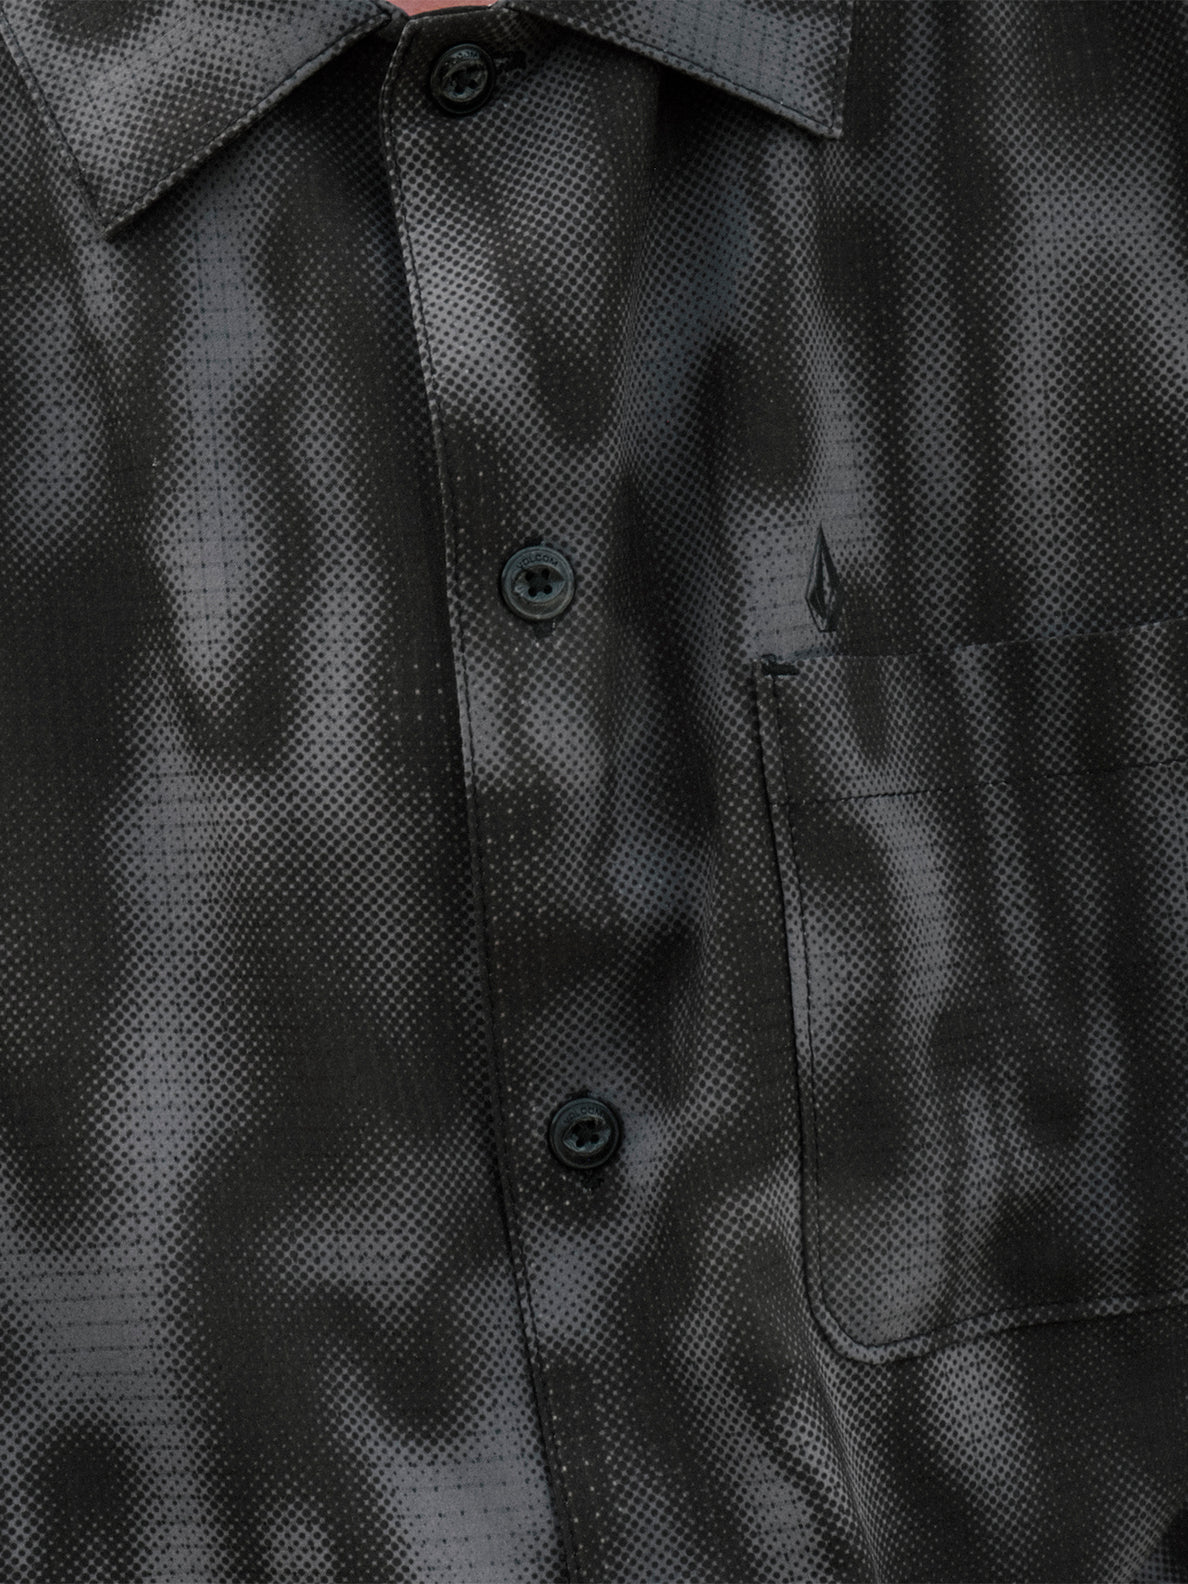 Ridgestone Short Sleeve Shirt - Asphalt Black